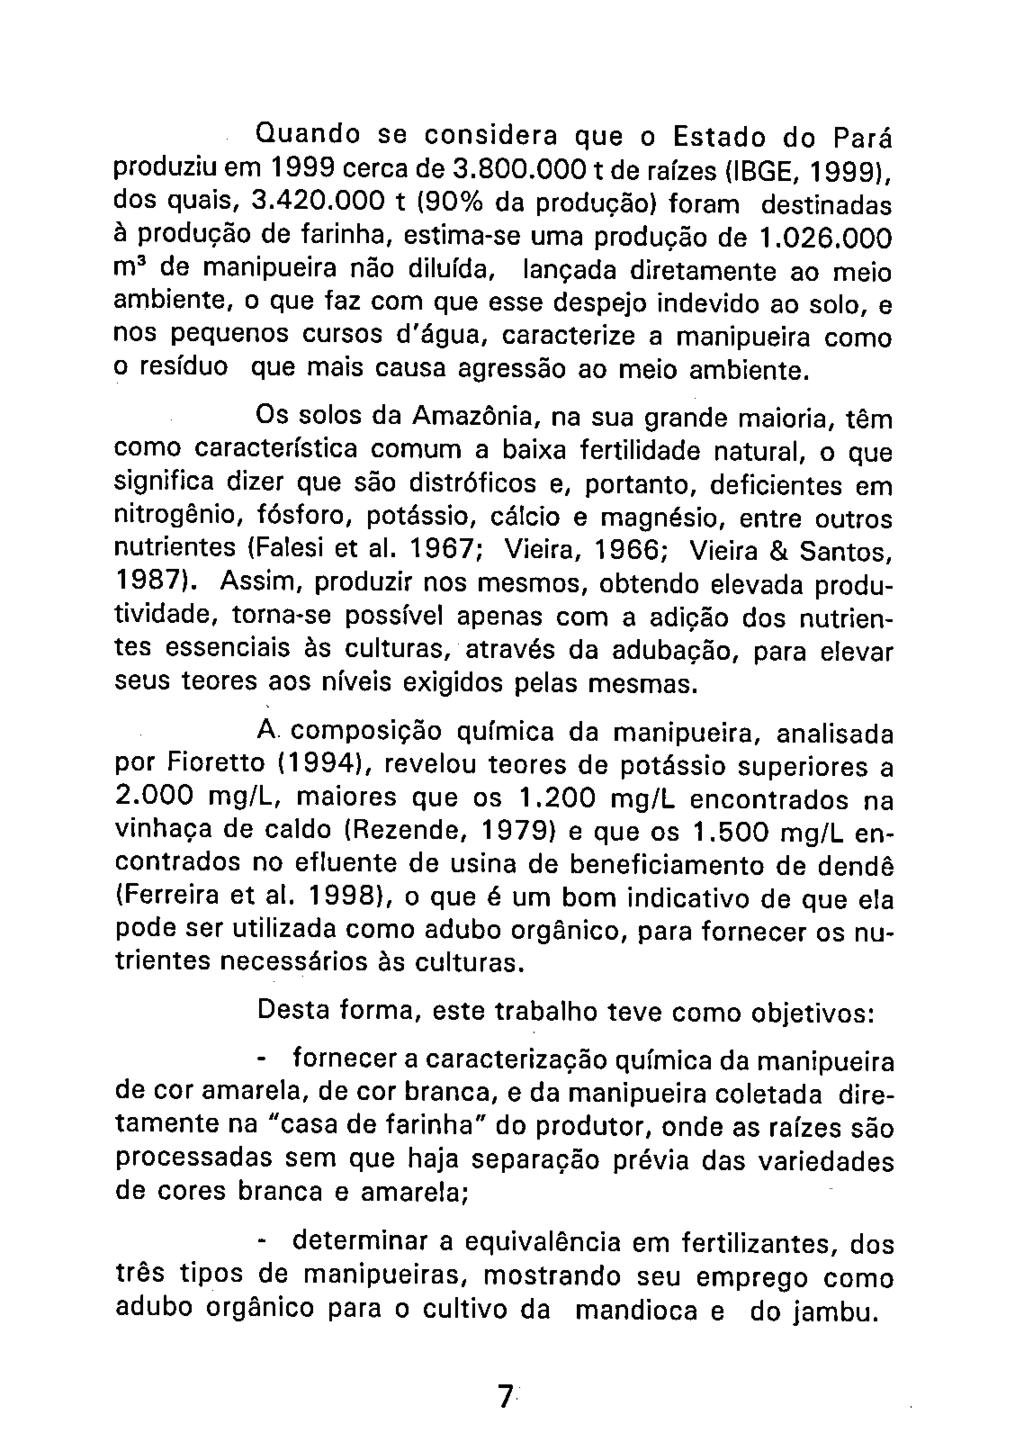 Quando se considera que o Estado do Pará produziu em 1999 cerca de 3.800.000 t de raízes (IBGE, 1999), dos quais, 3.420.